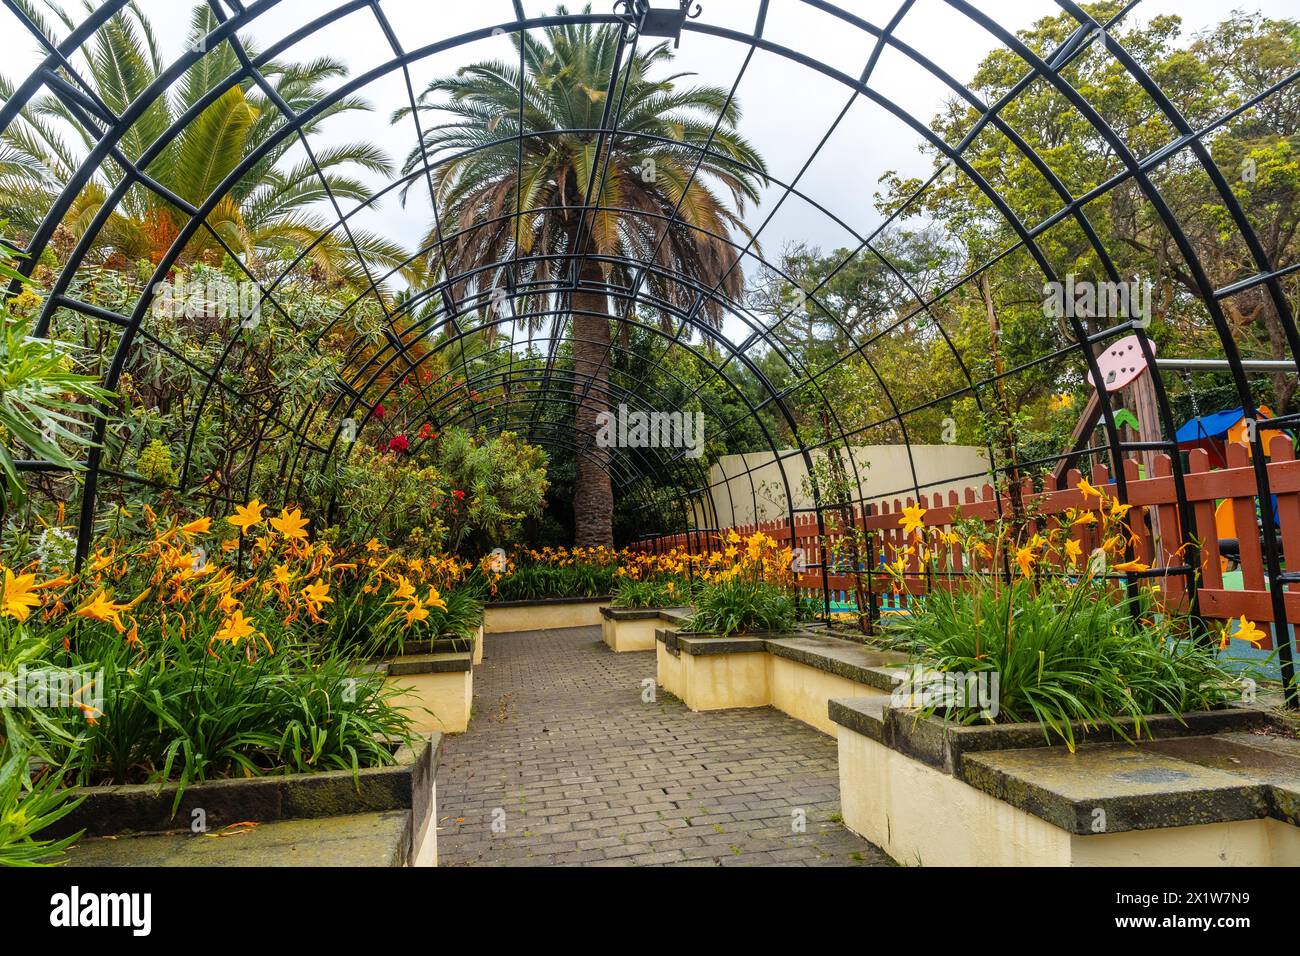 Schöner Weg in einem botanischen Garten, nachhaltiges Tourismuskonzept in Arucas, Gran Canaria. Spanien Stockfoto